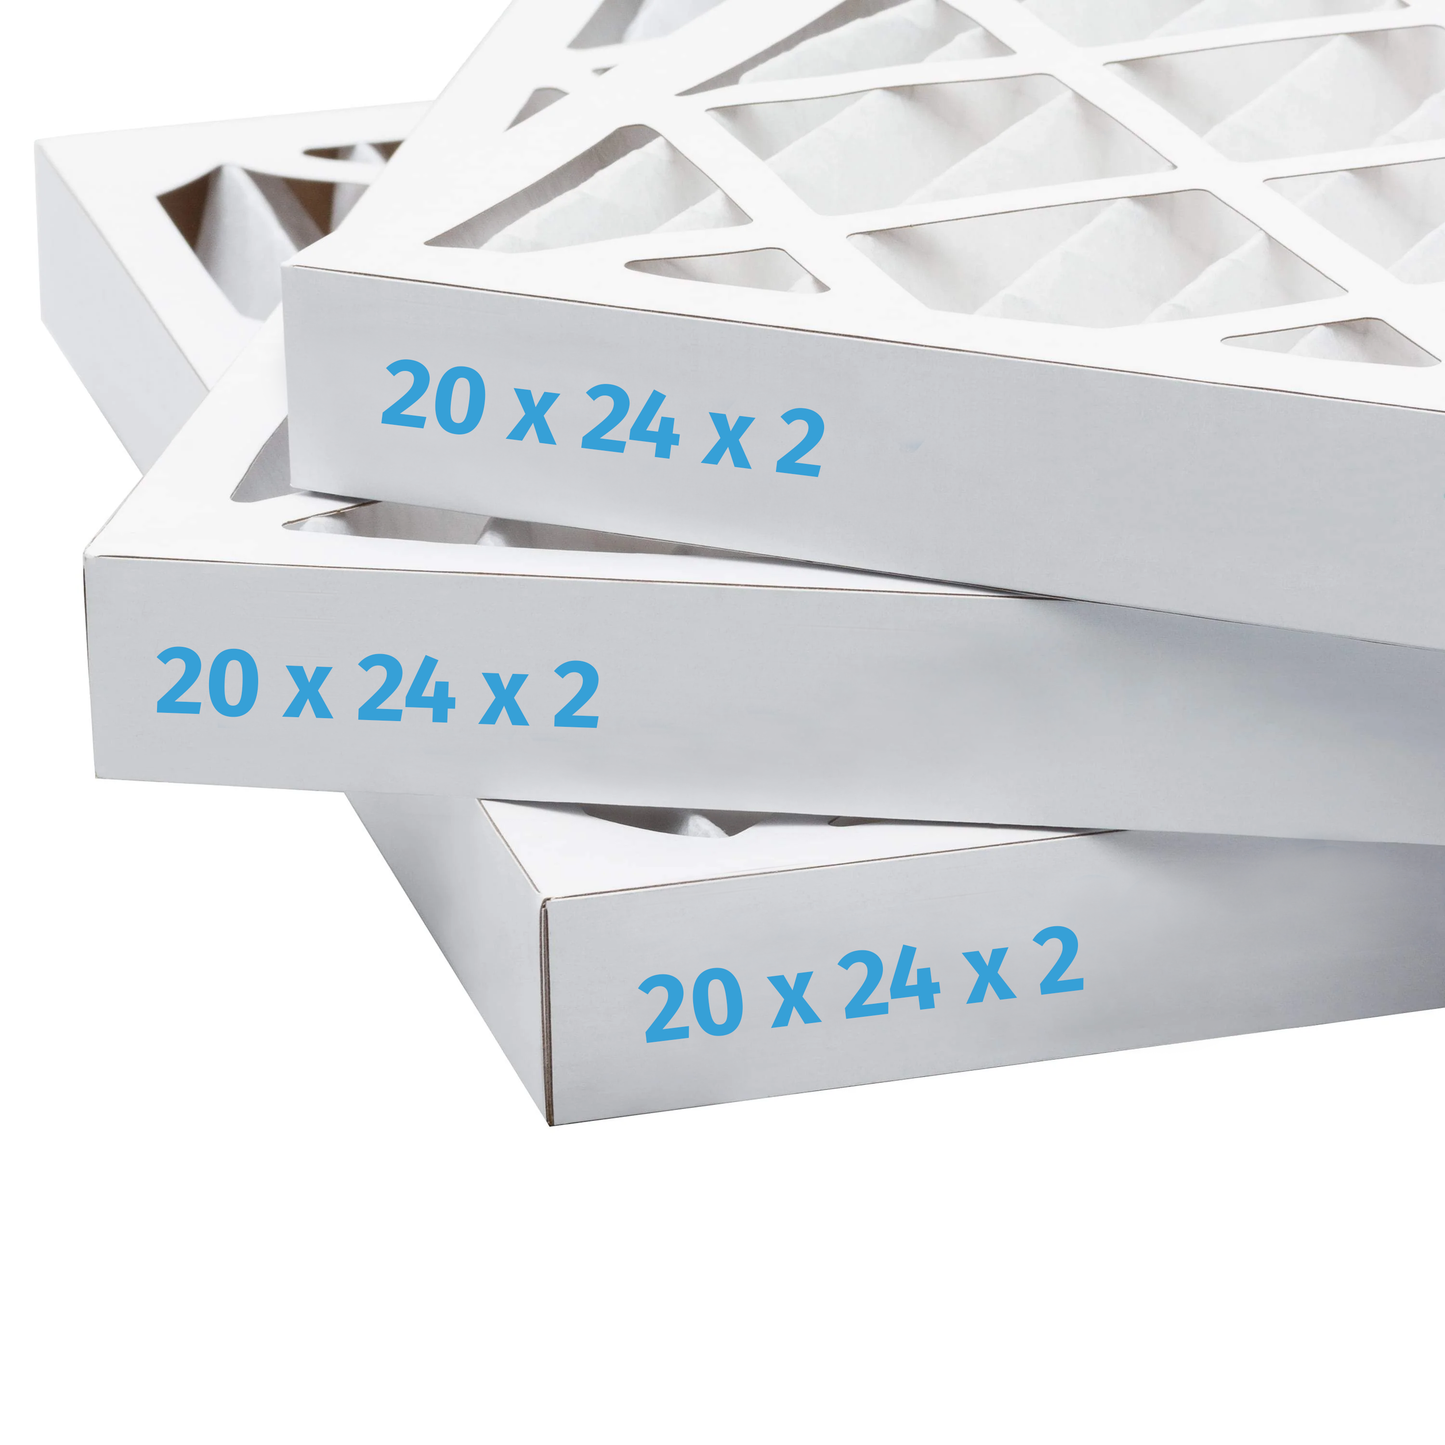 20x24x2 Air Filter - AC Furnace Filter